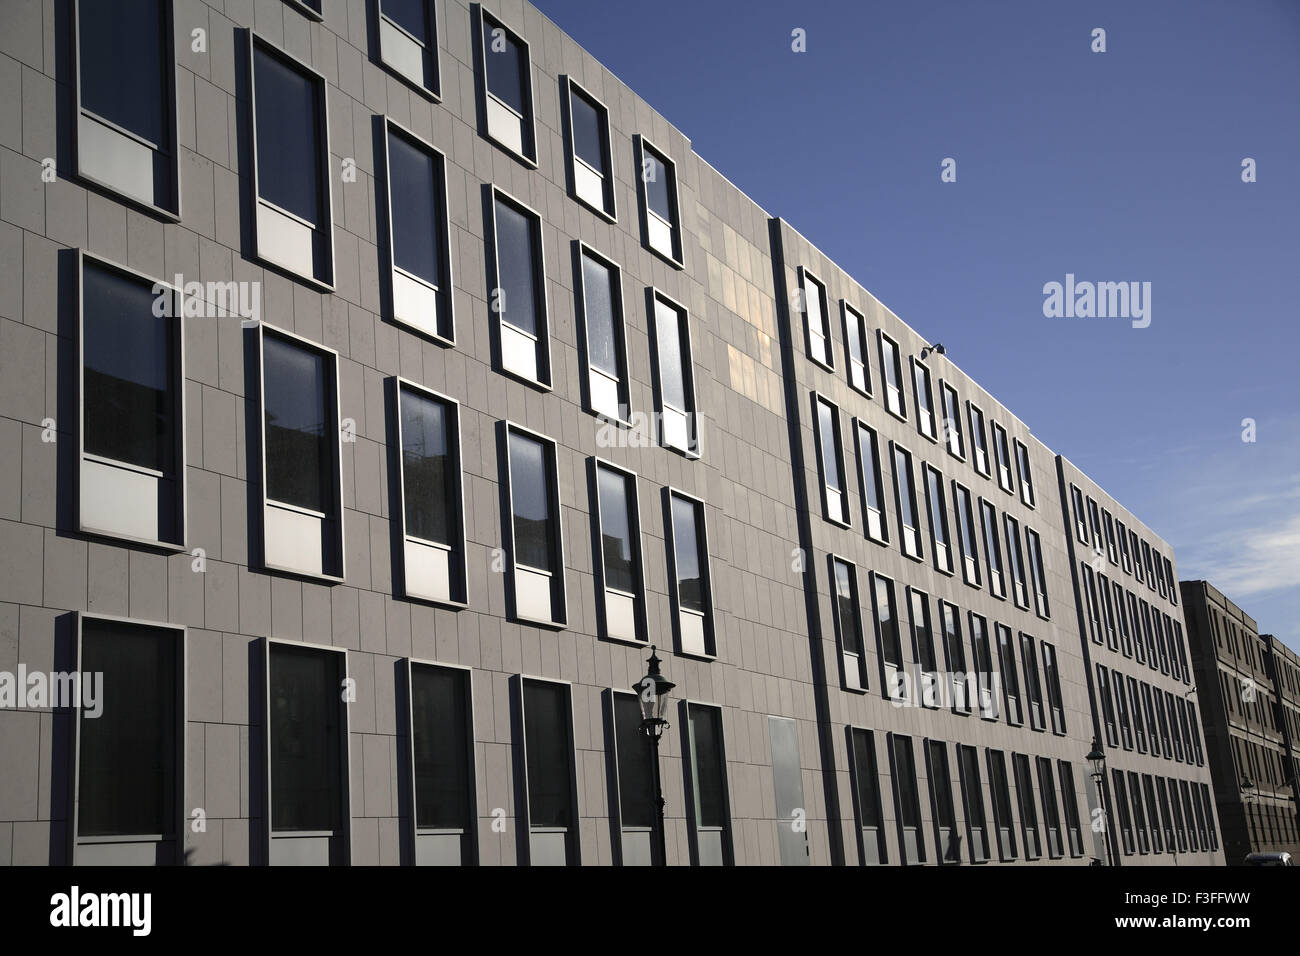 Diseño repetido de ventanas de vidrio diagonal rectangulares de edificios ; Perspectiva ; puntos de fuga ; Copenhague Foto de stock